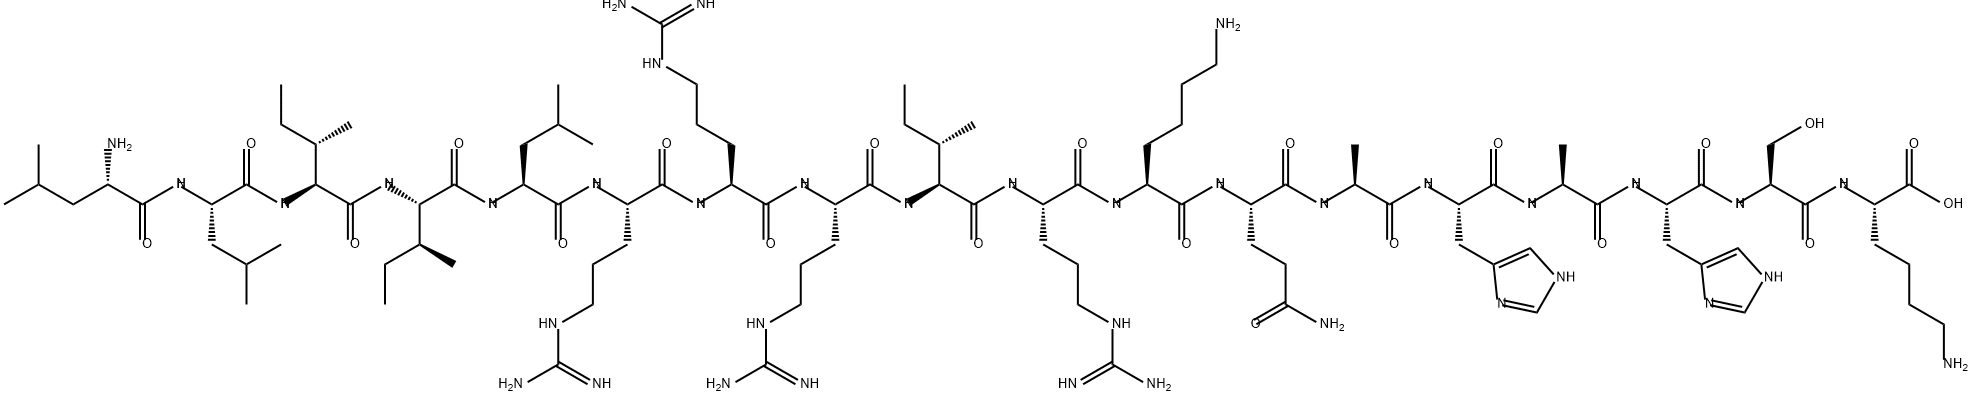 L-Lysine, L-leucyl-L-leucyl-L-isoleucyl-L-isoleucyl-L-leucyl-L-arginyl-L-arginyl-L-arginyl-L-isoleucyl-L-arginyl-L-lysyl-L-glutaminyl-L-alanyl-L-histidyl-L-alanyl-L-histidyl-L-seryl-|血管内皮钙粘蛋白多肽